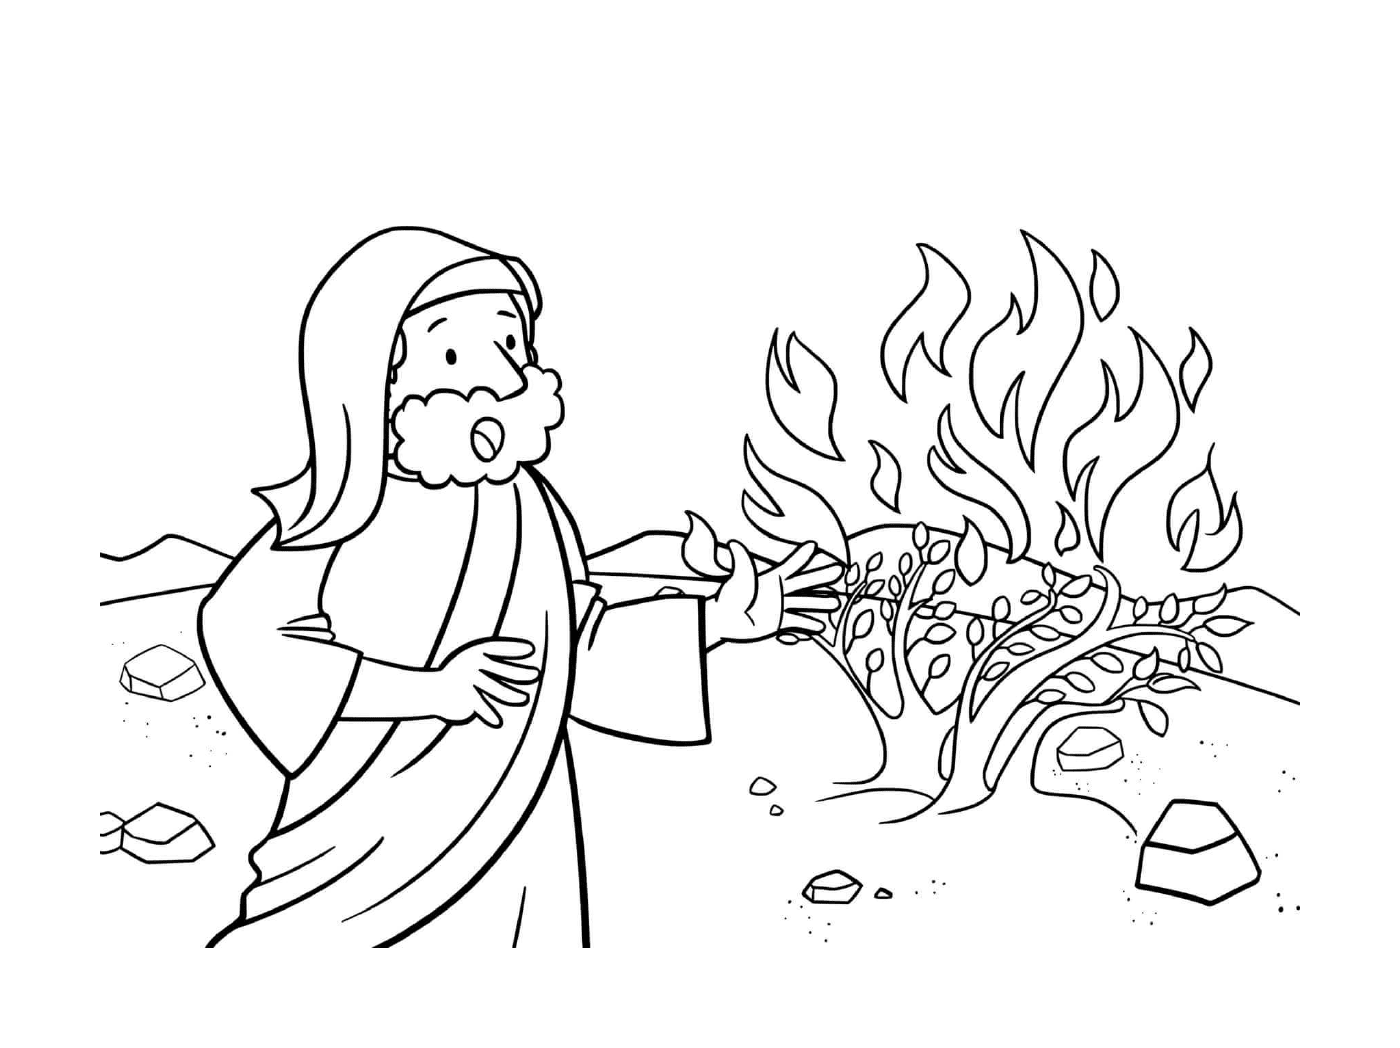   Homme brûlant un arbre 